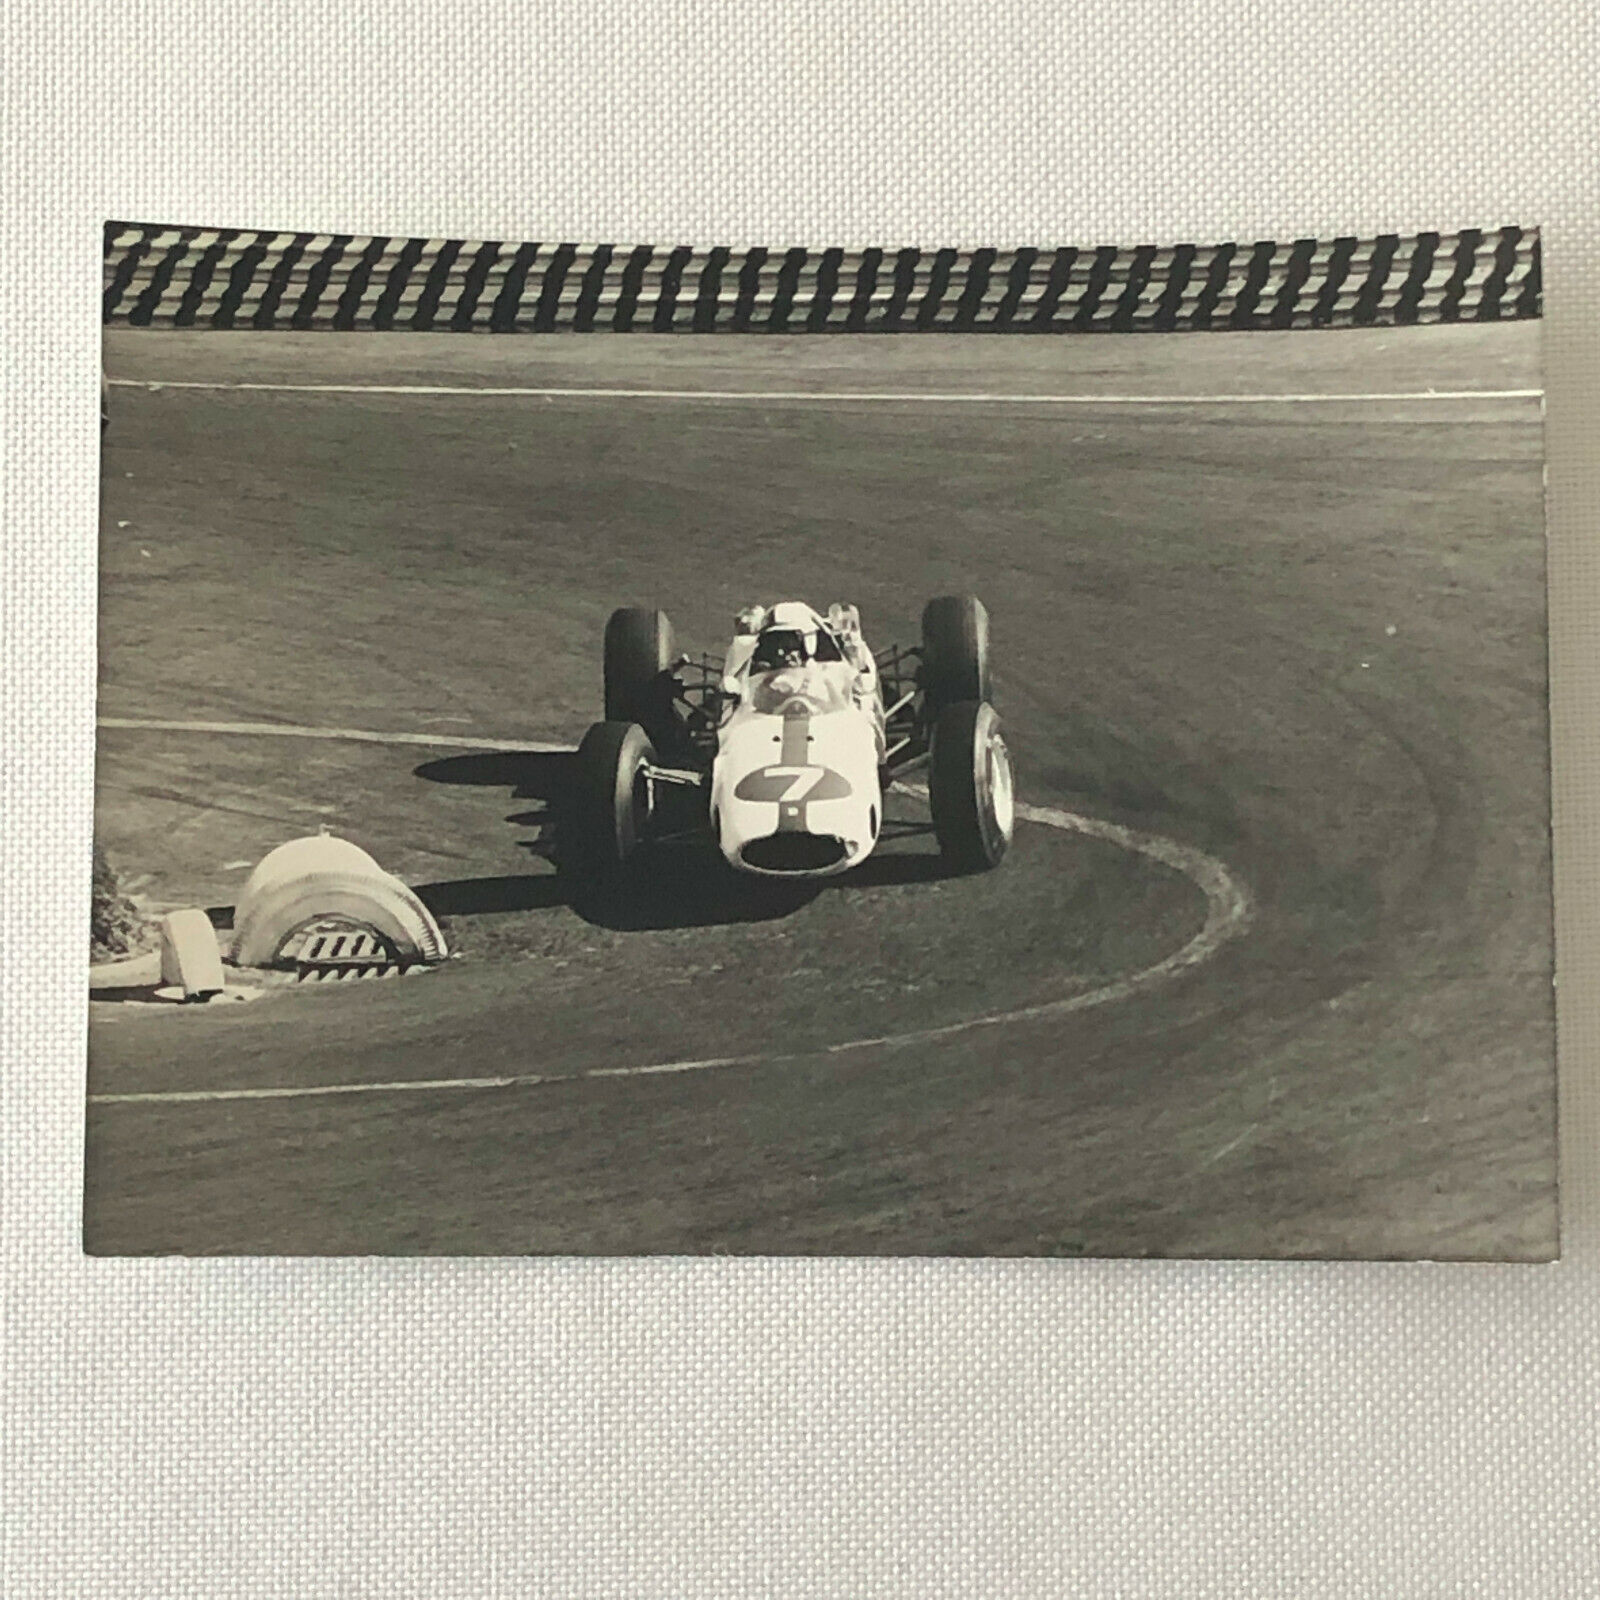 Vintage John Surtees Car Racing Photo Photograph - Bernard Cahier 